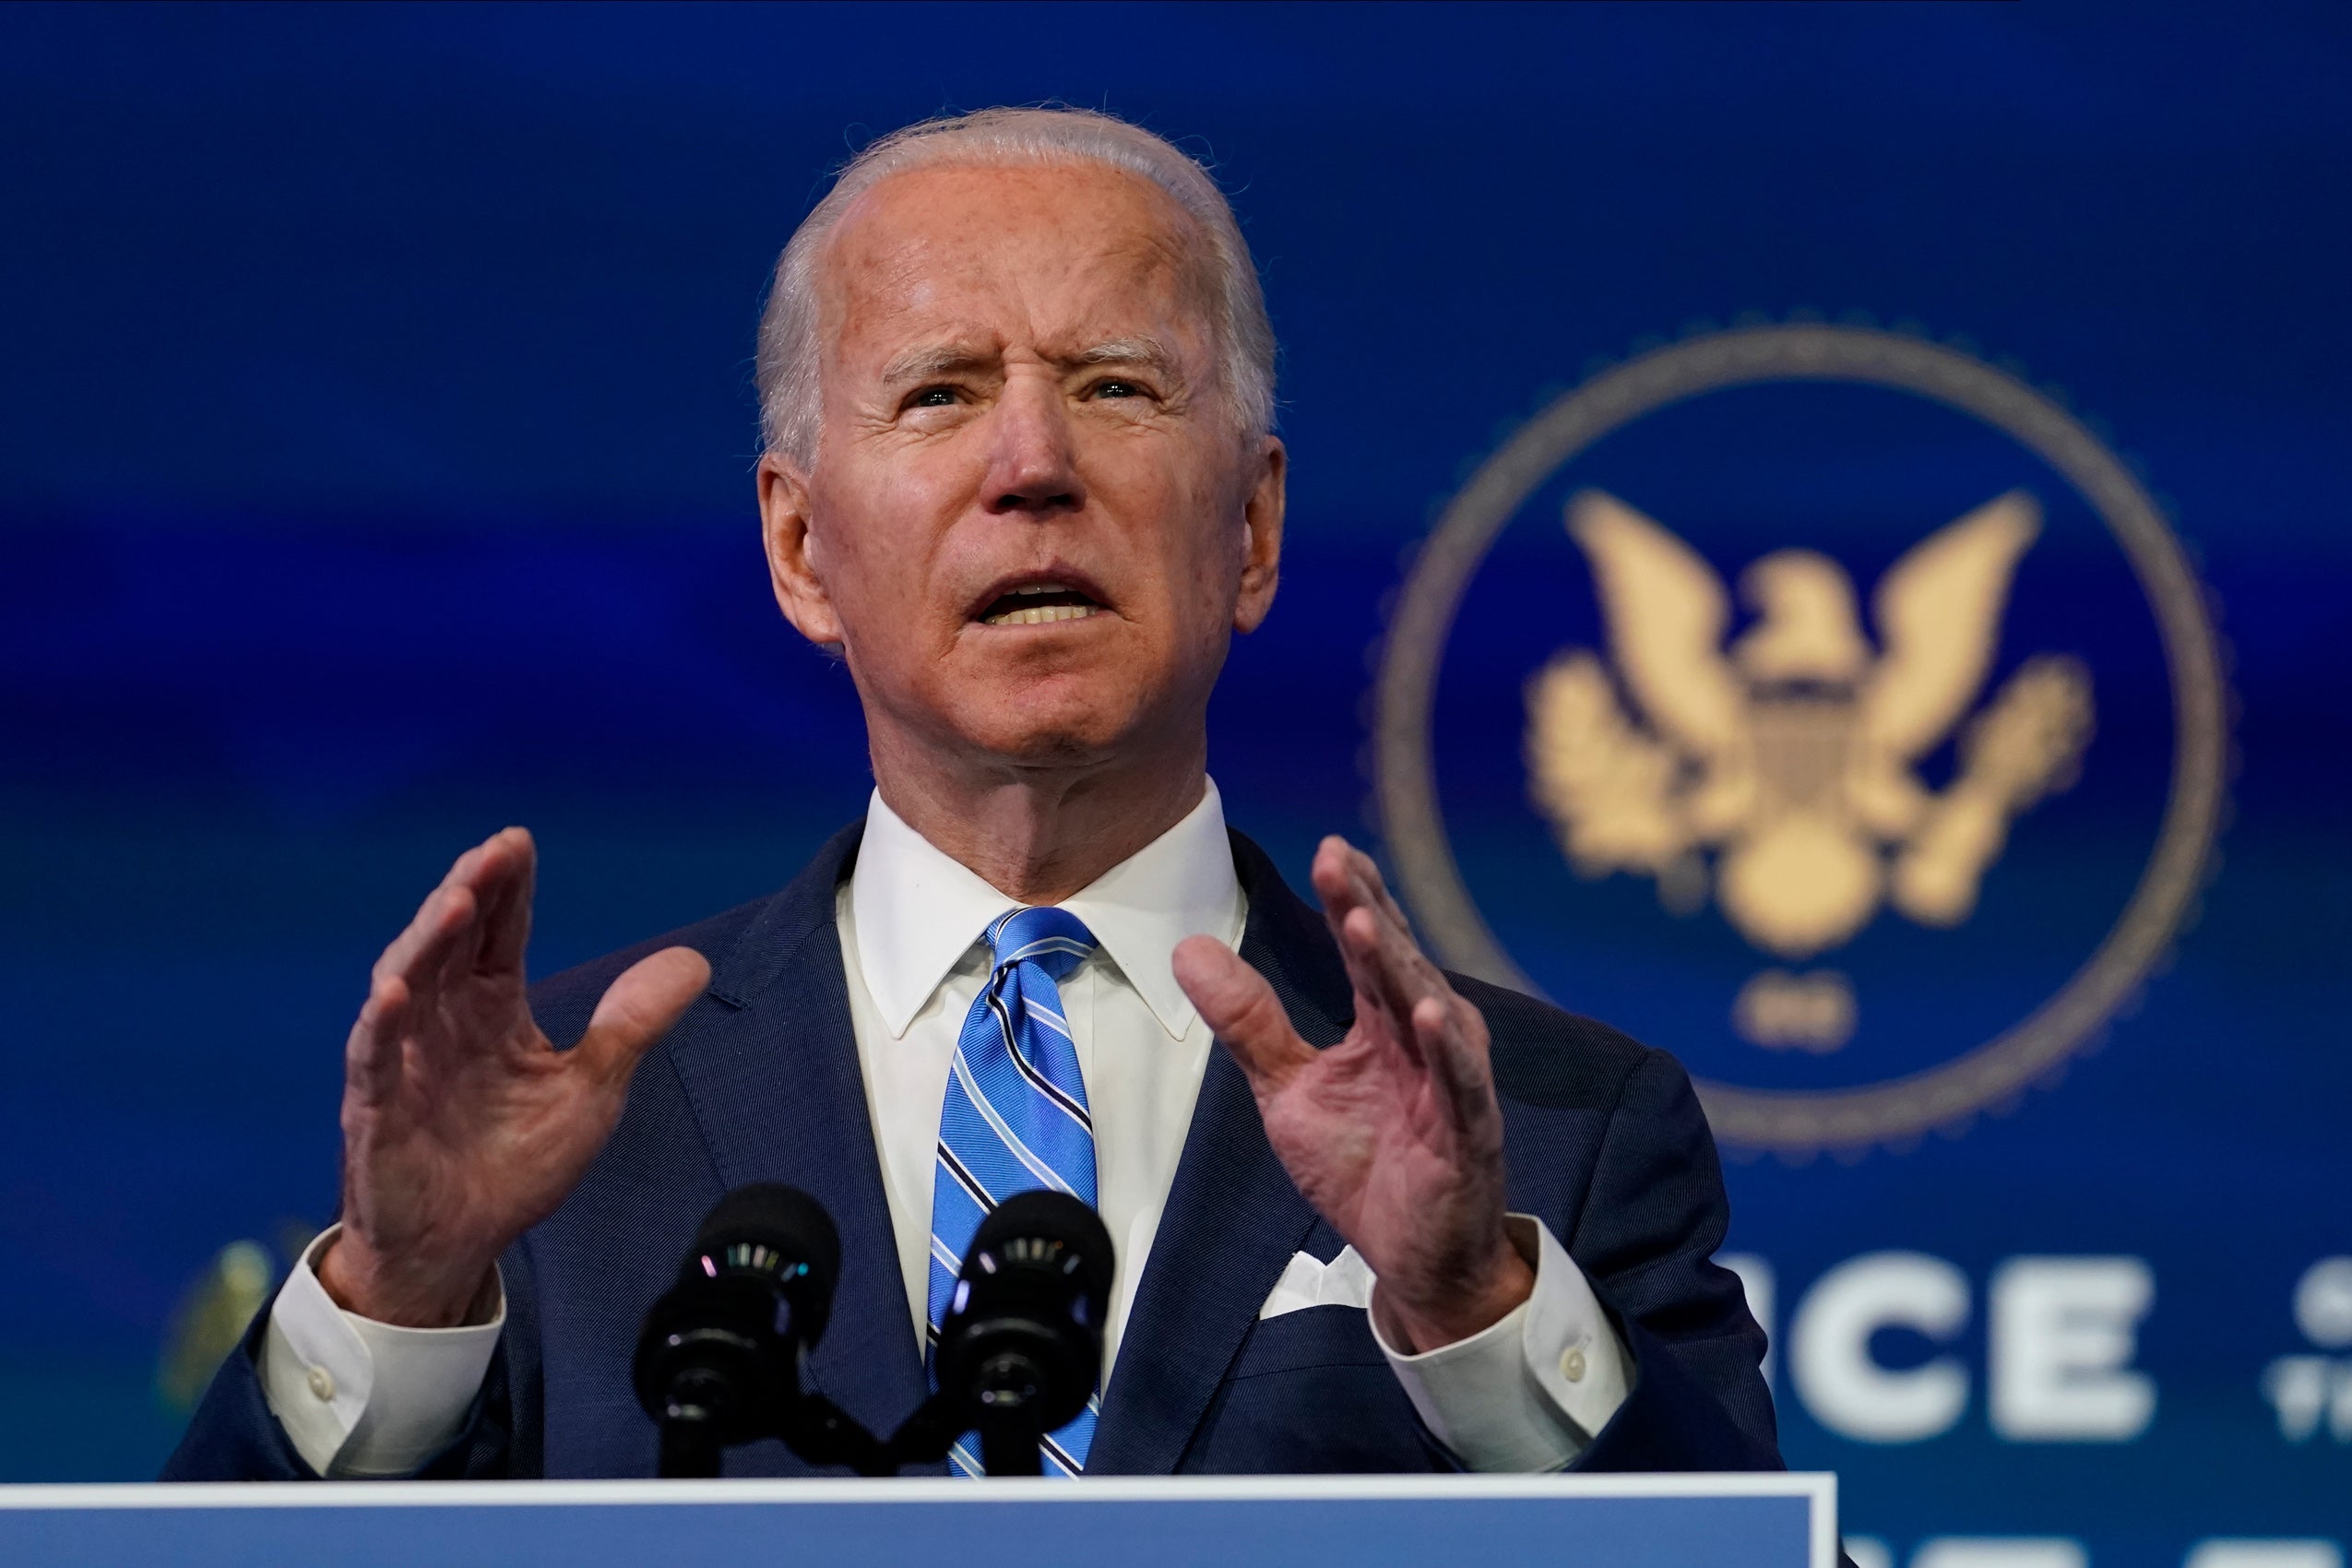 Biden speaking at a podium